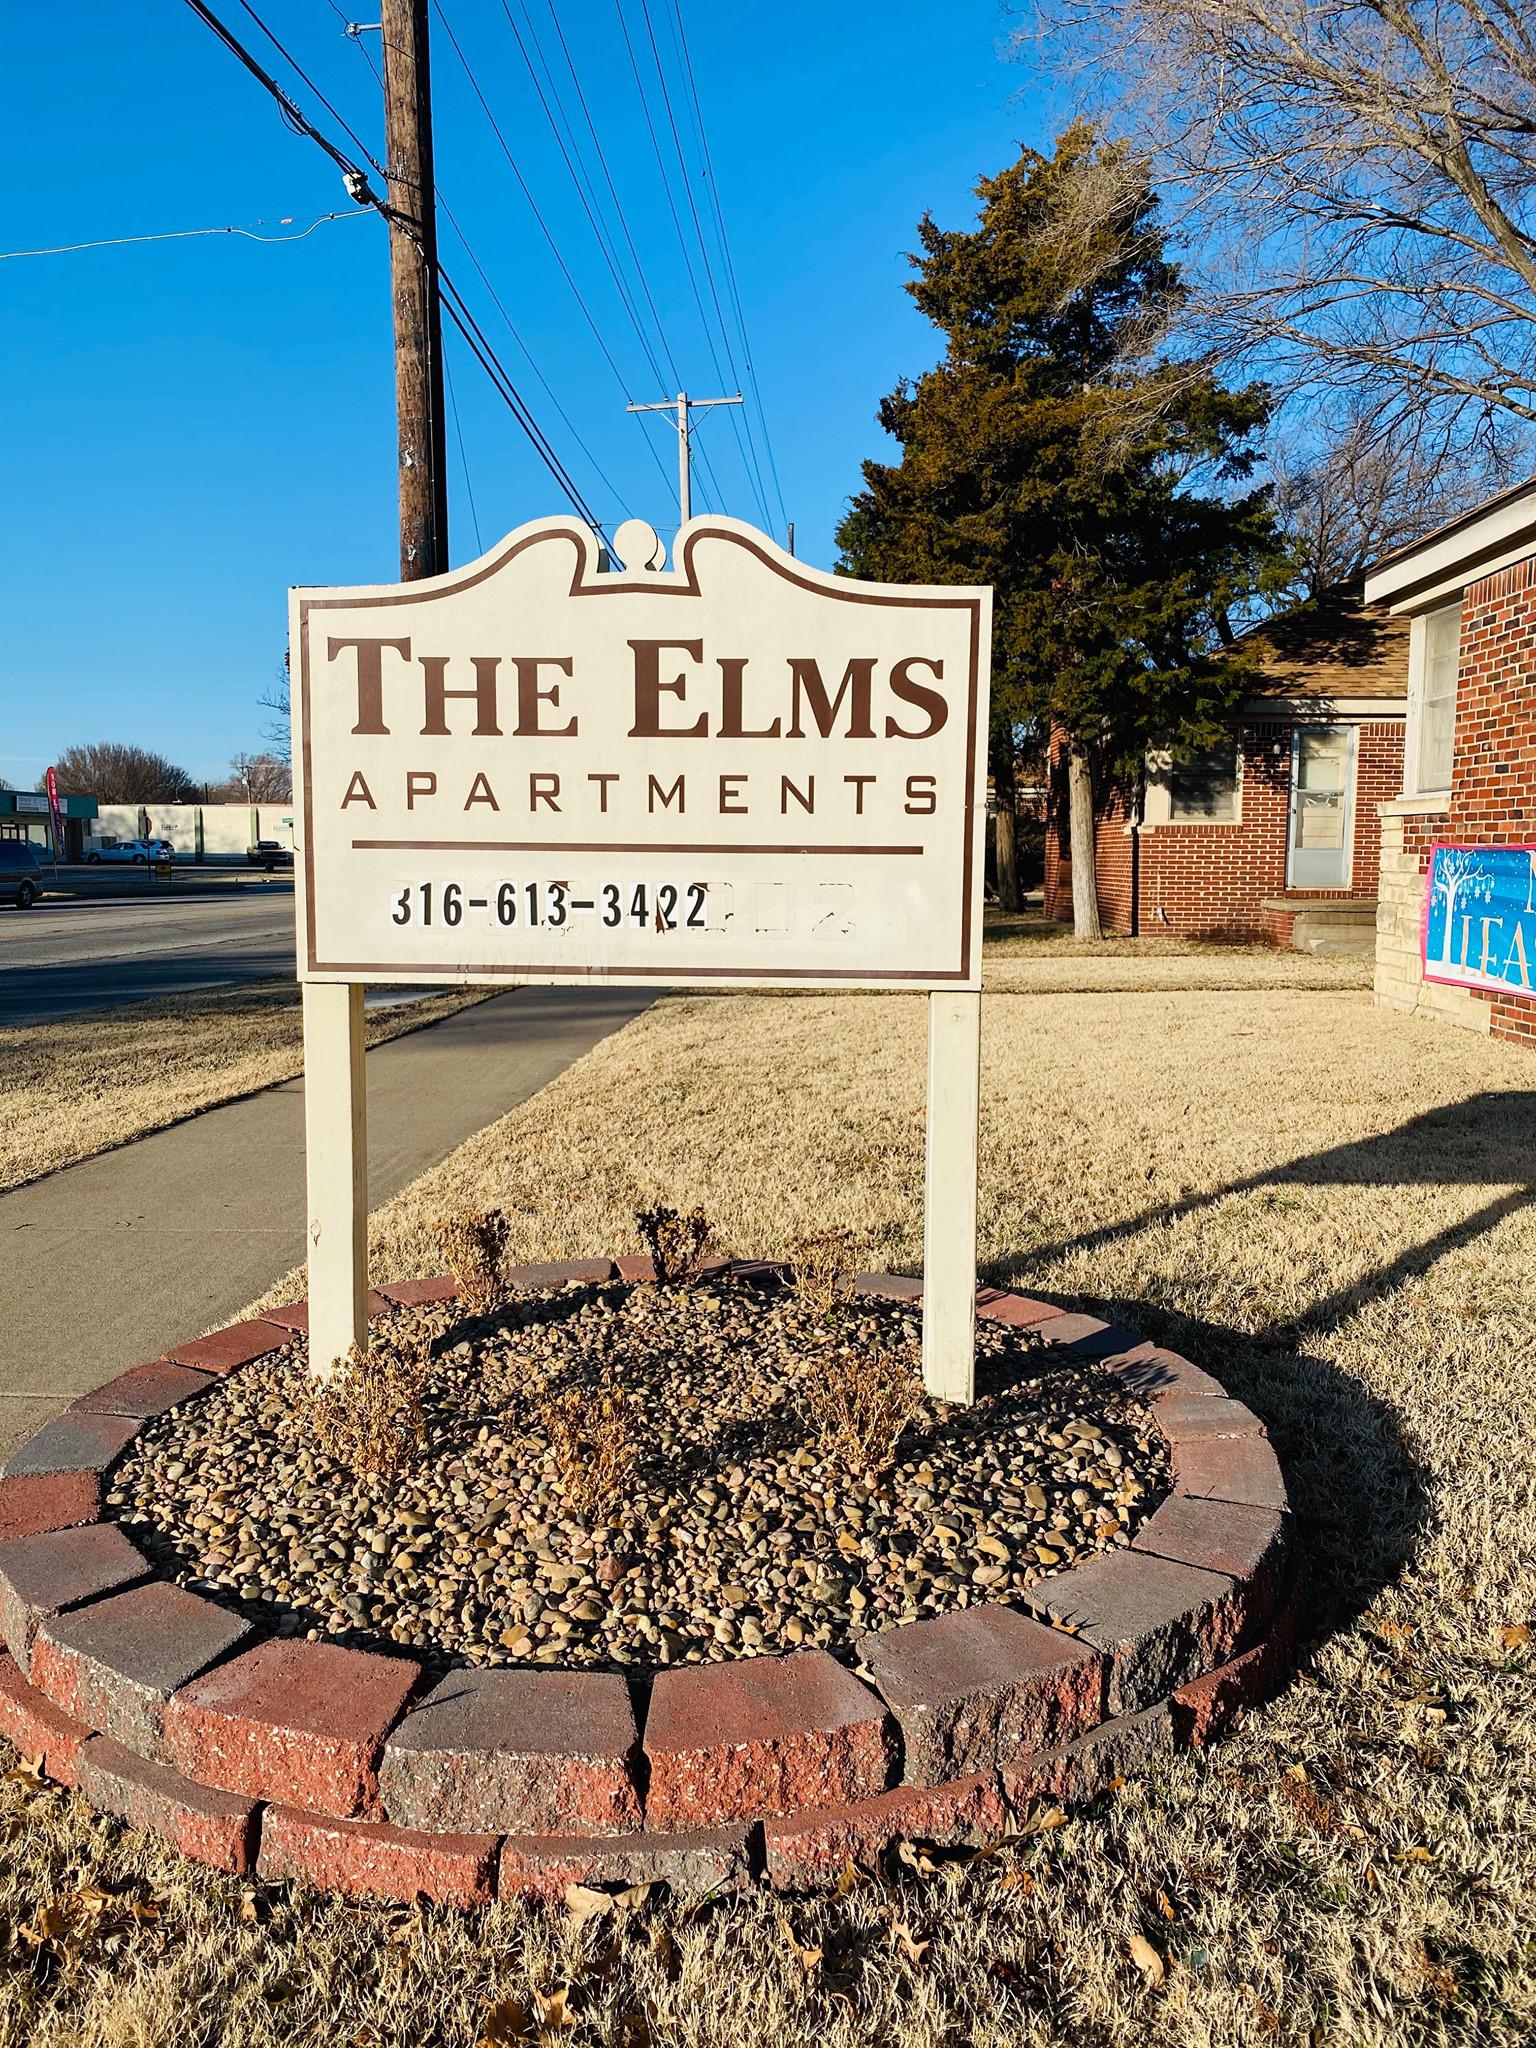 Elms Apartments